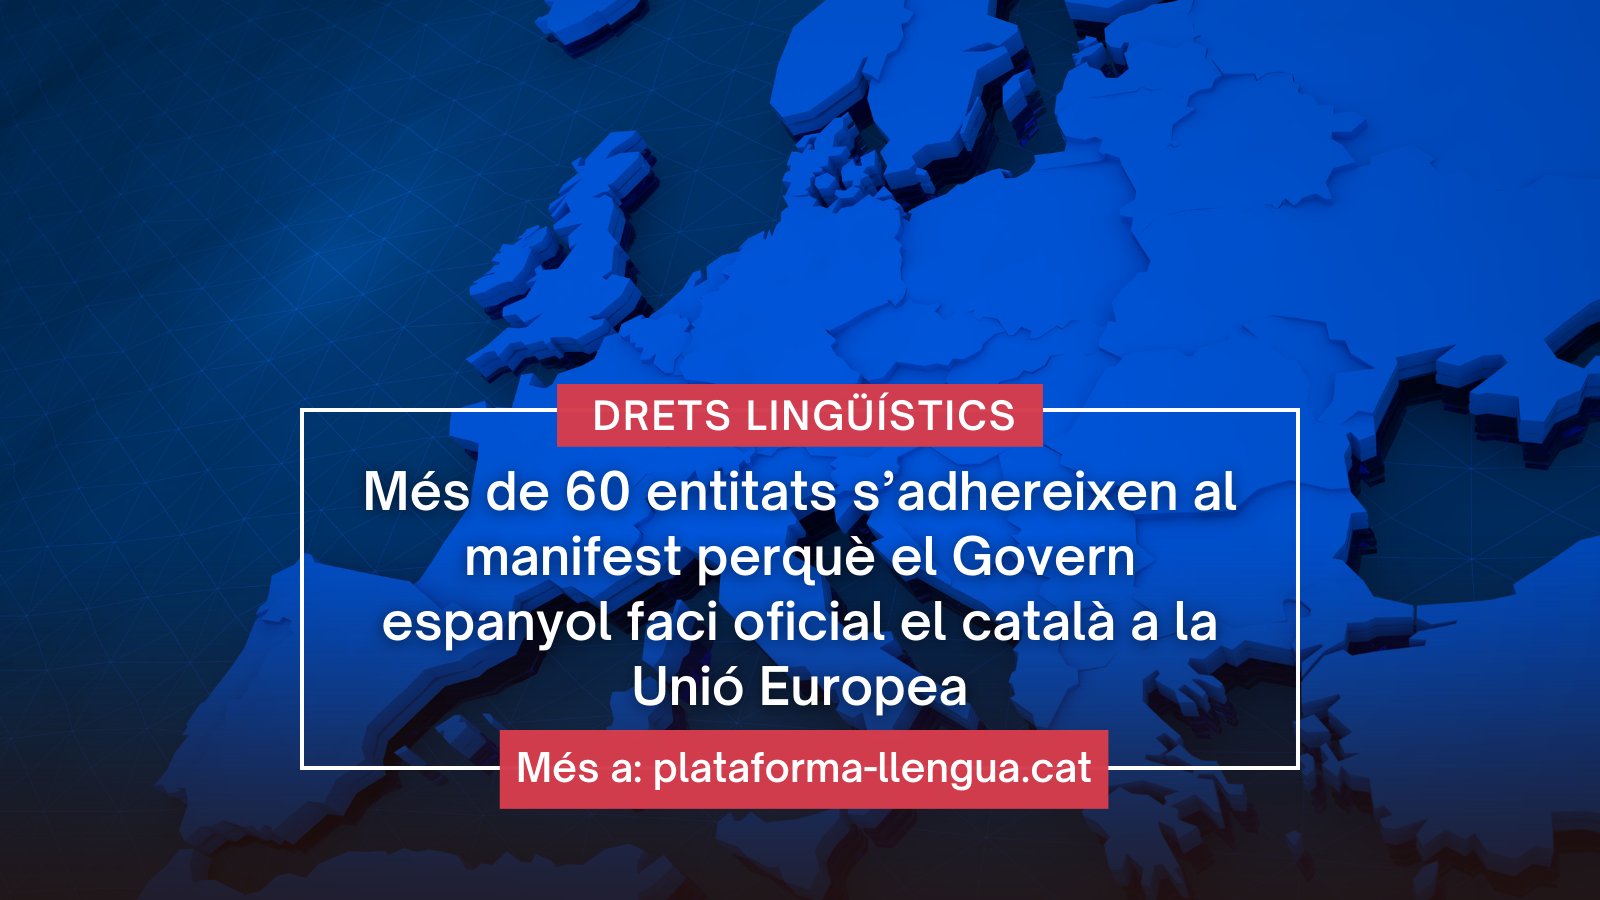 Més de 60 entitats s’adhereixen al manifest perquè el Govern espanyol faci oficial el català a la Unió Europea